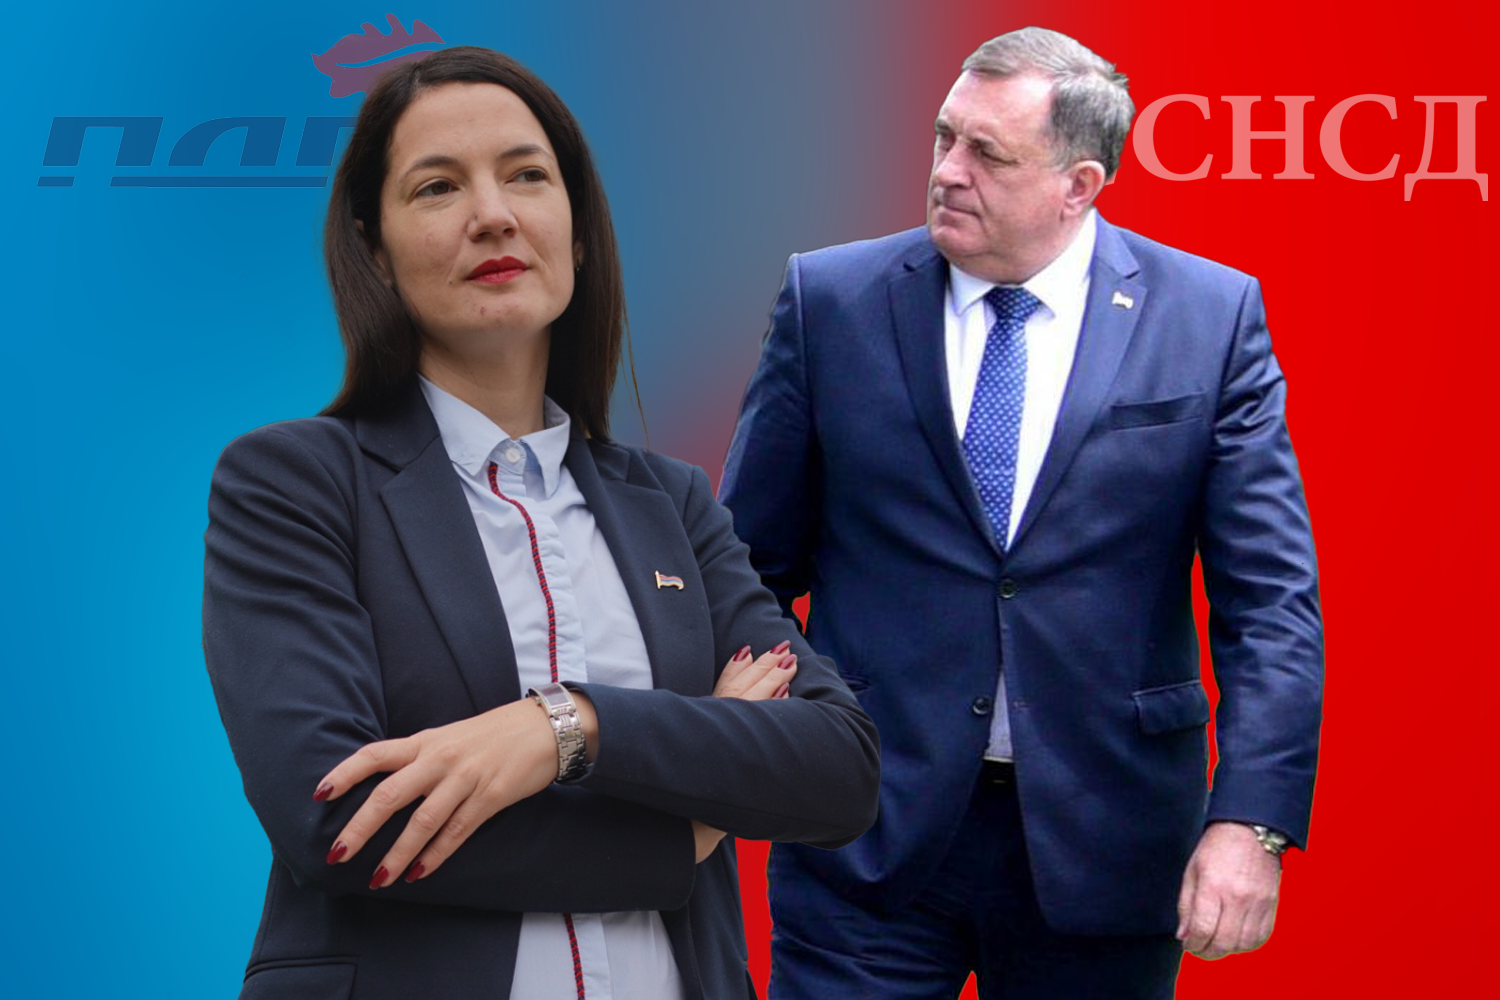 TV duel Milorada Dodika i Jelene Trivić uskoro na BN televiziji?!